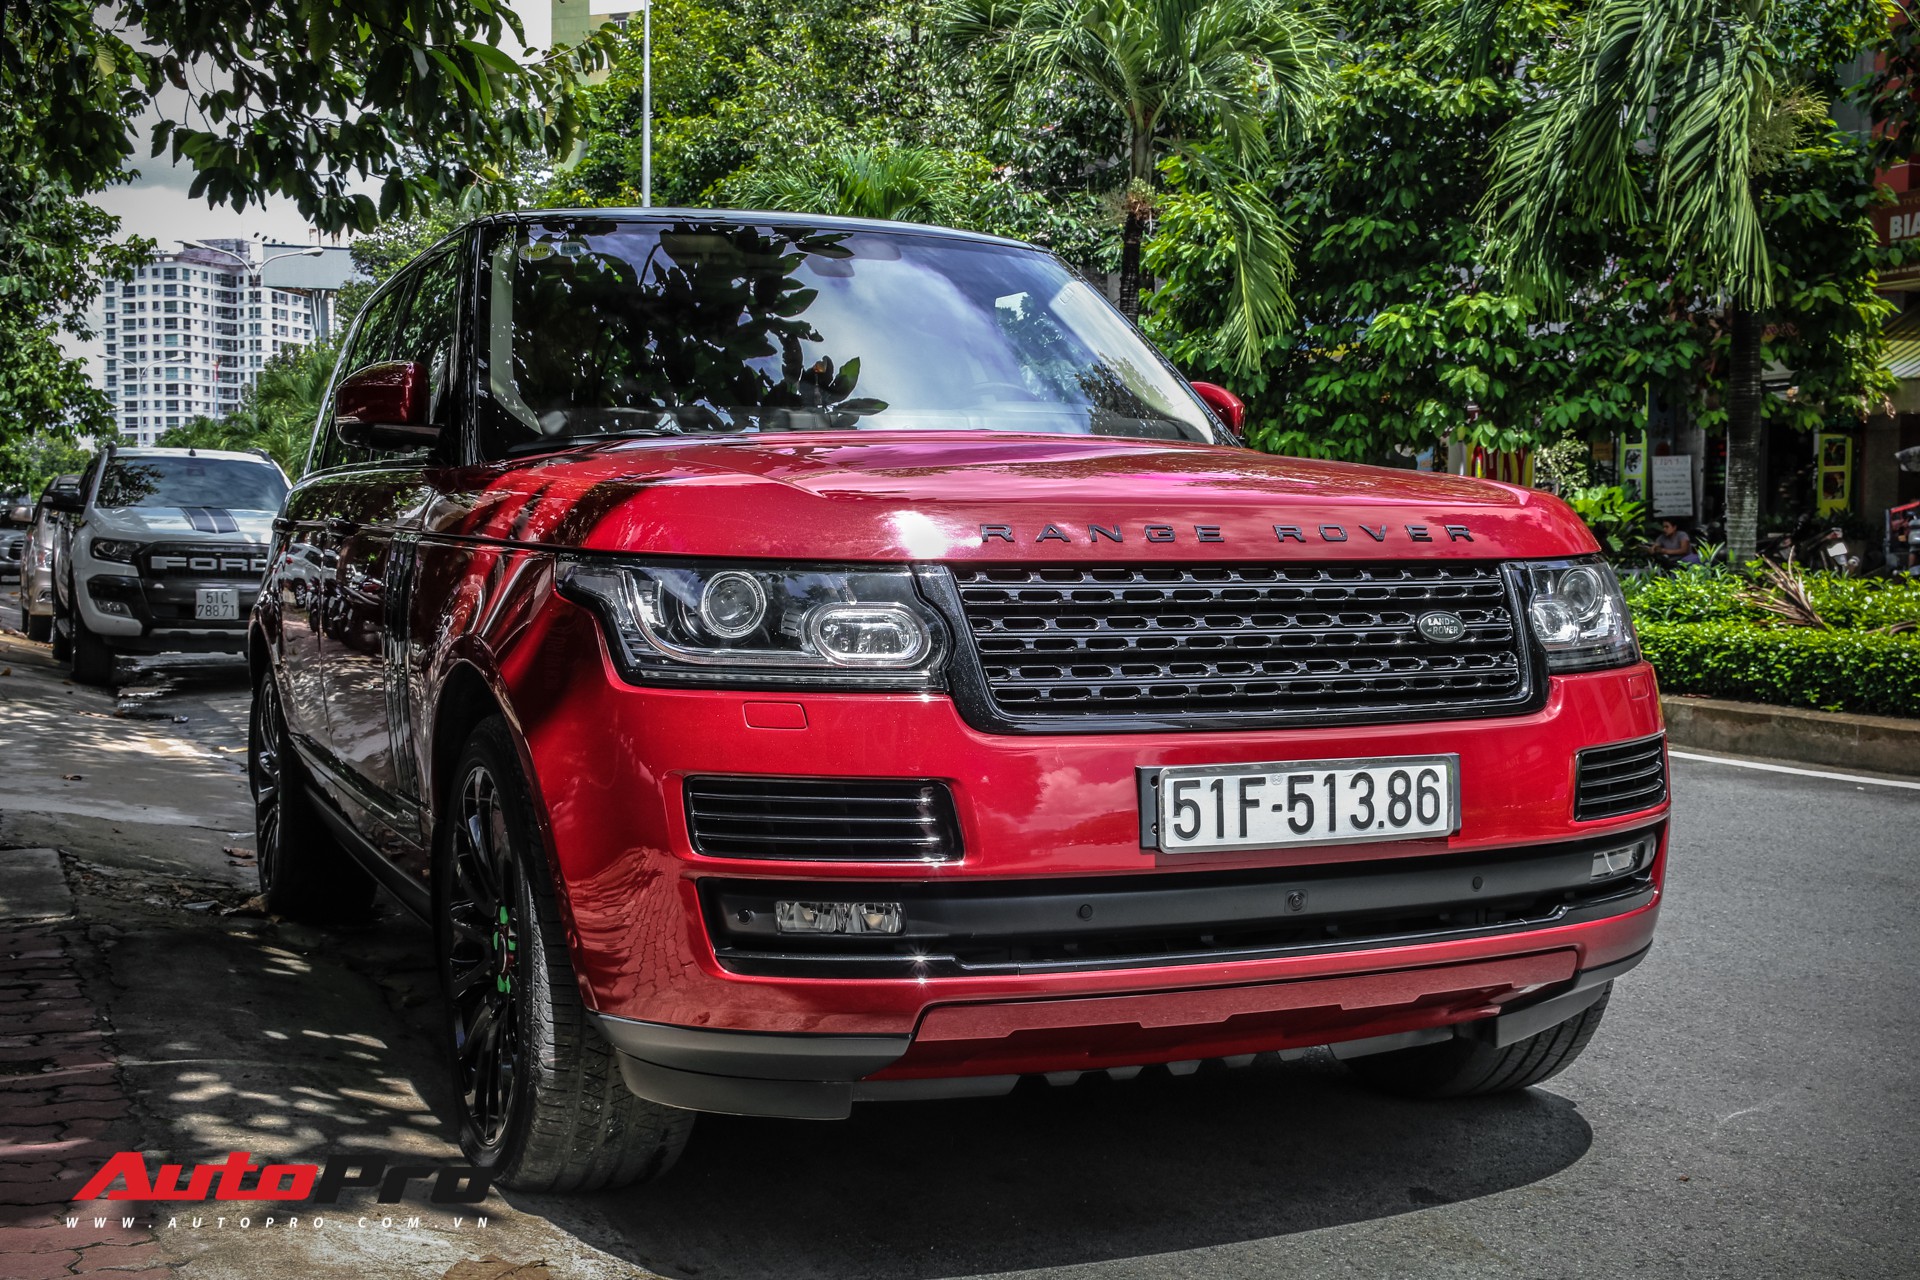 Range Rover Velar màu đỏ cực độc cập bến Việt Nam